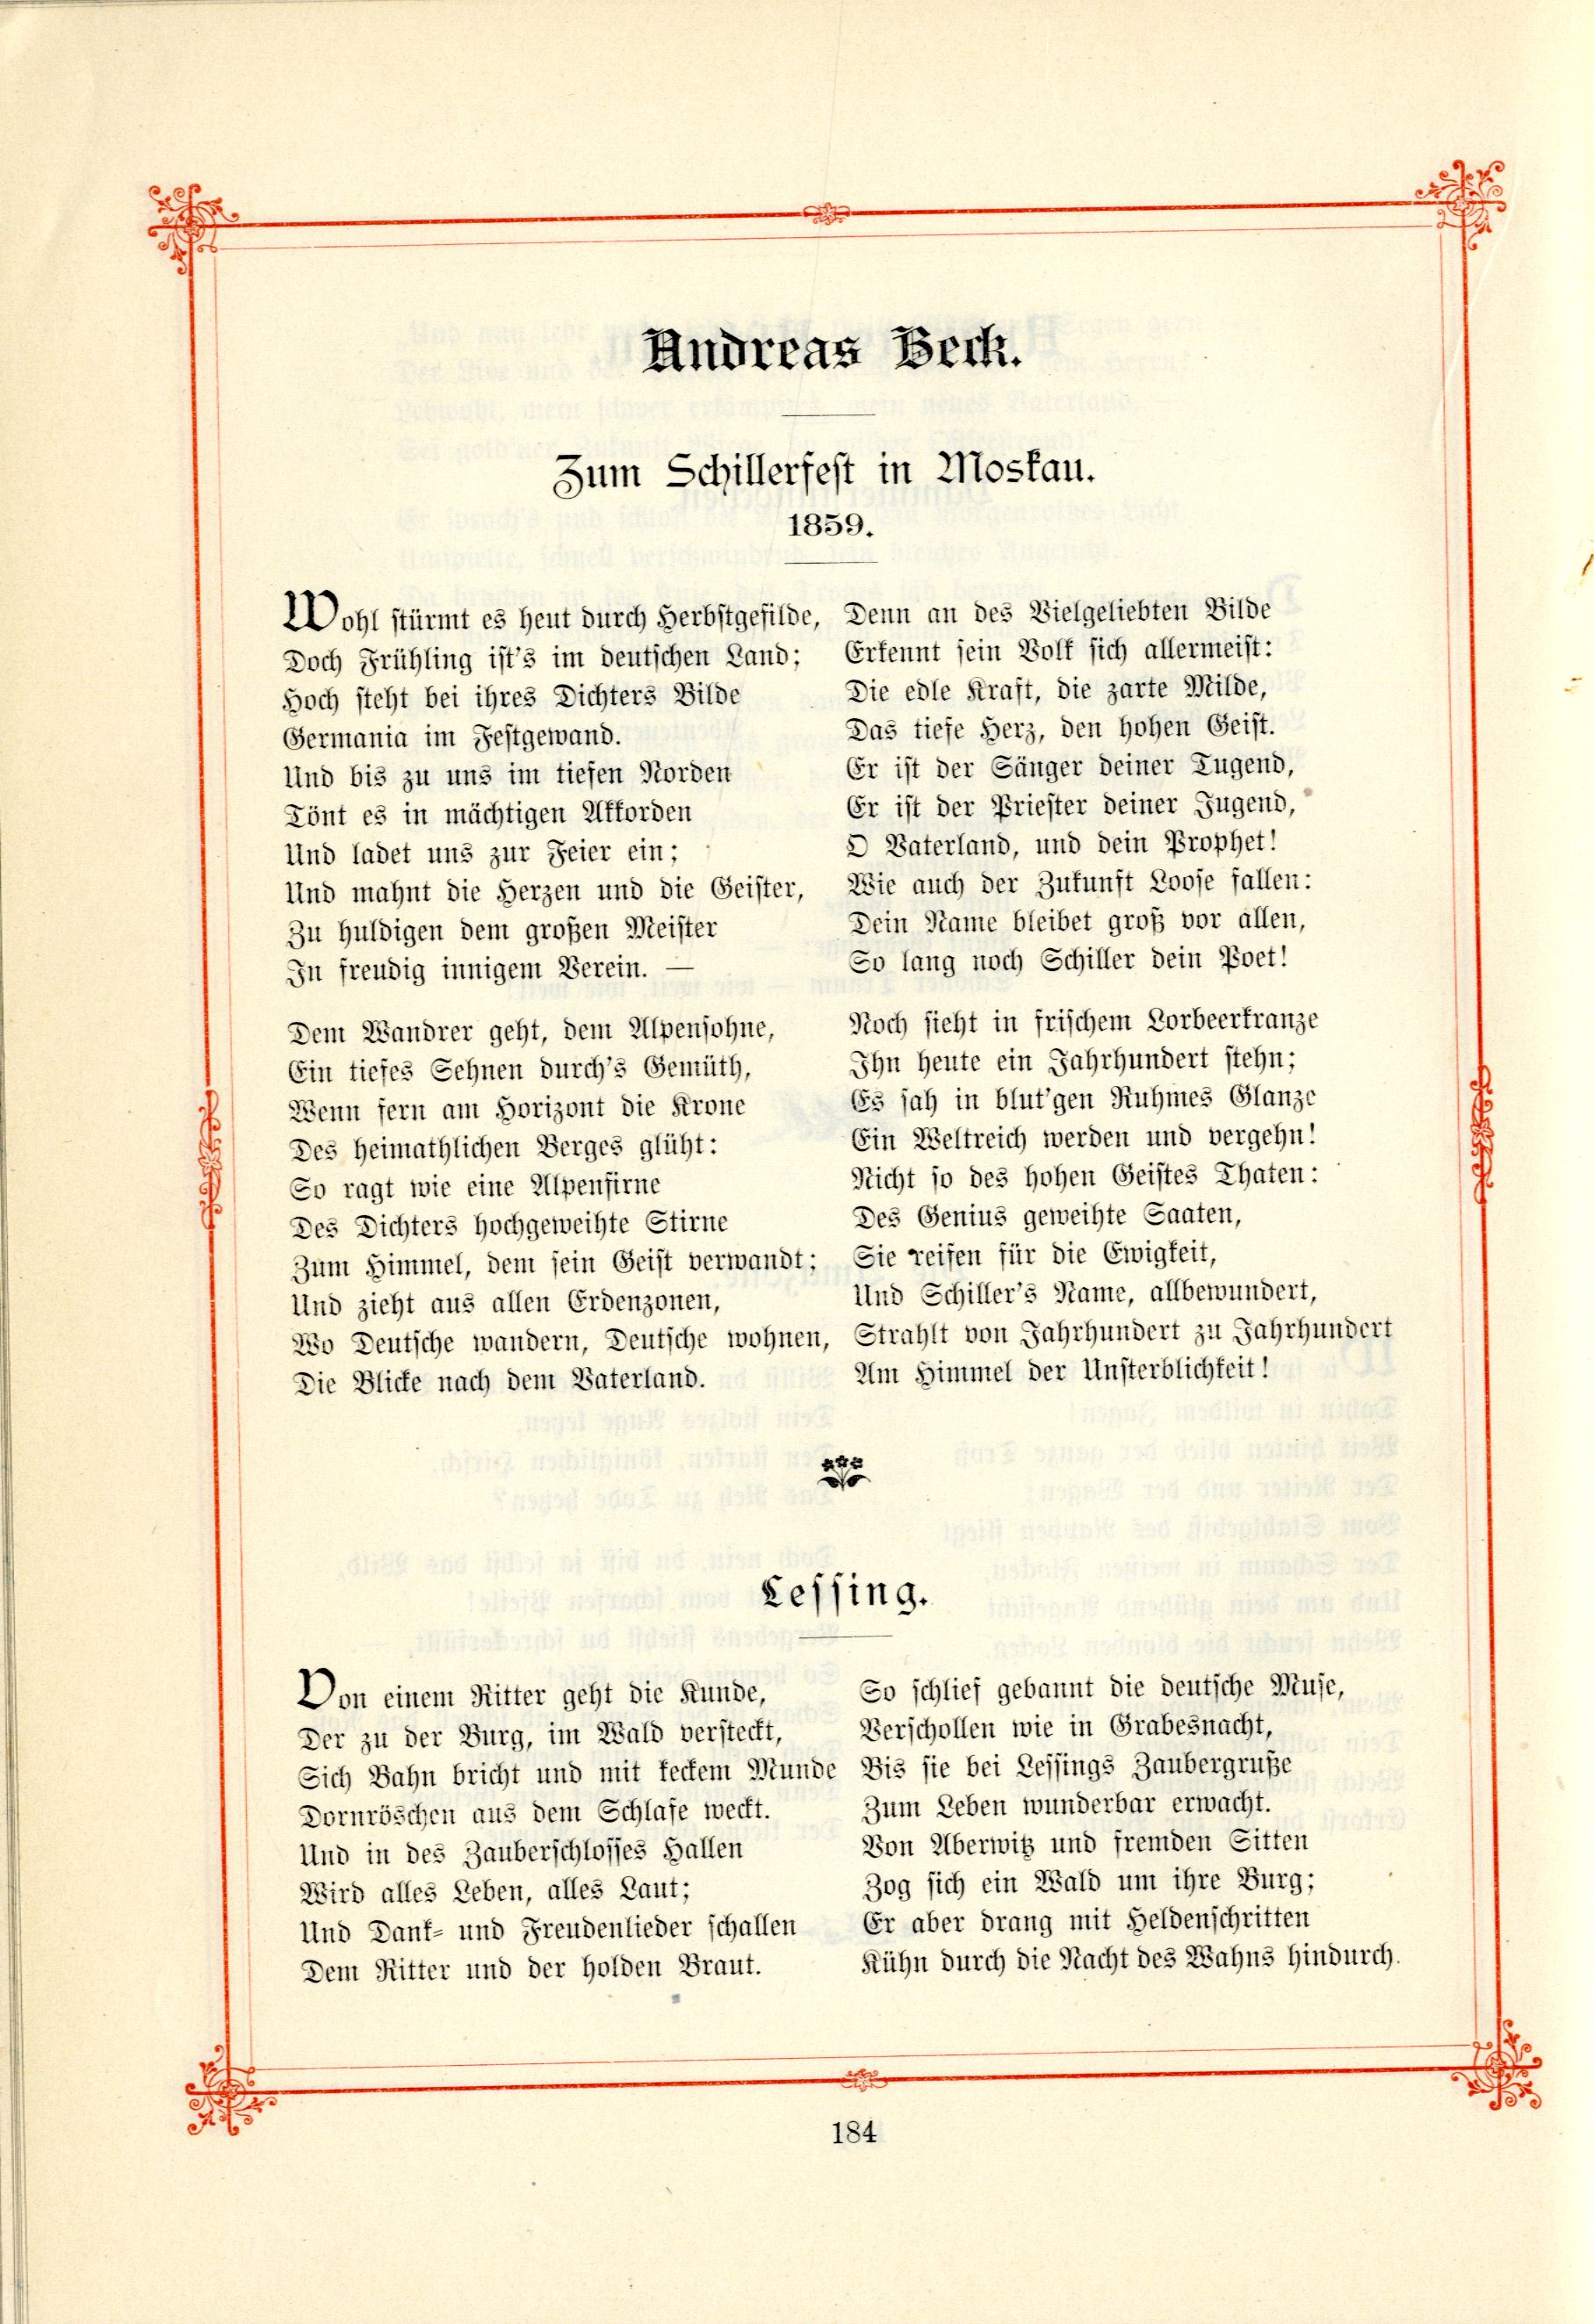 Das Baltische Dichterbuch (1895) | 230. (184) Main body of text